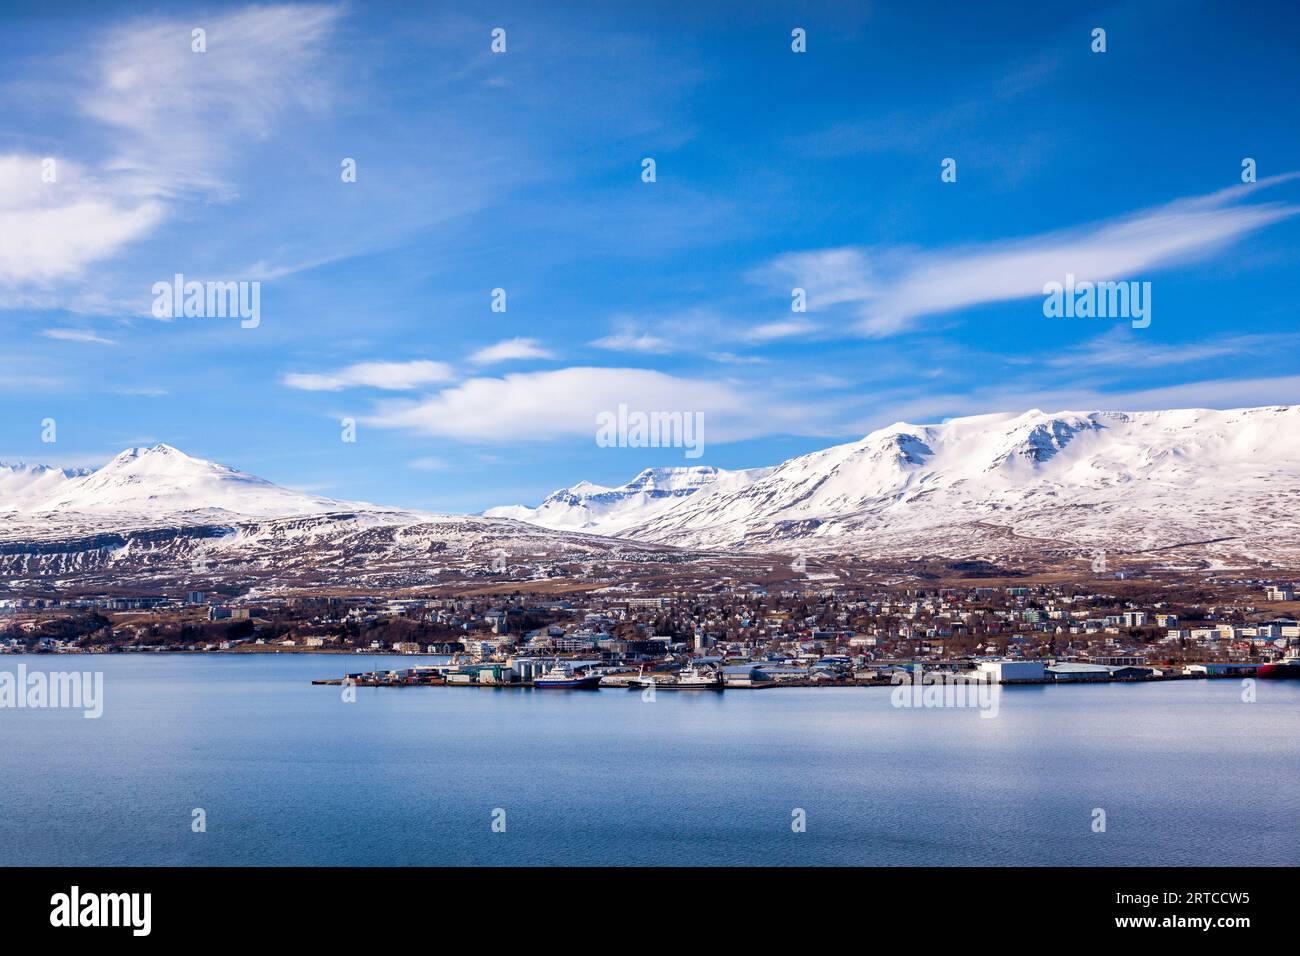 La città di Akureyri, sulle rive del fiordo Eyjafjordur, in Islanda settentrionale, in primavera. Foto Stock